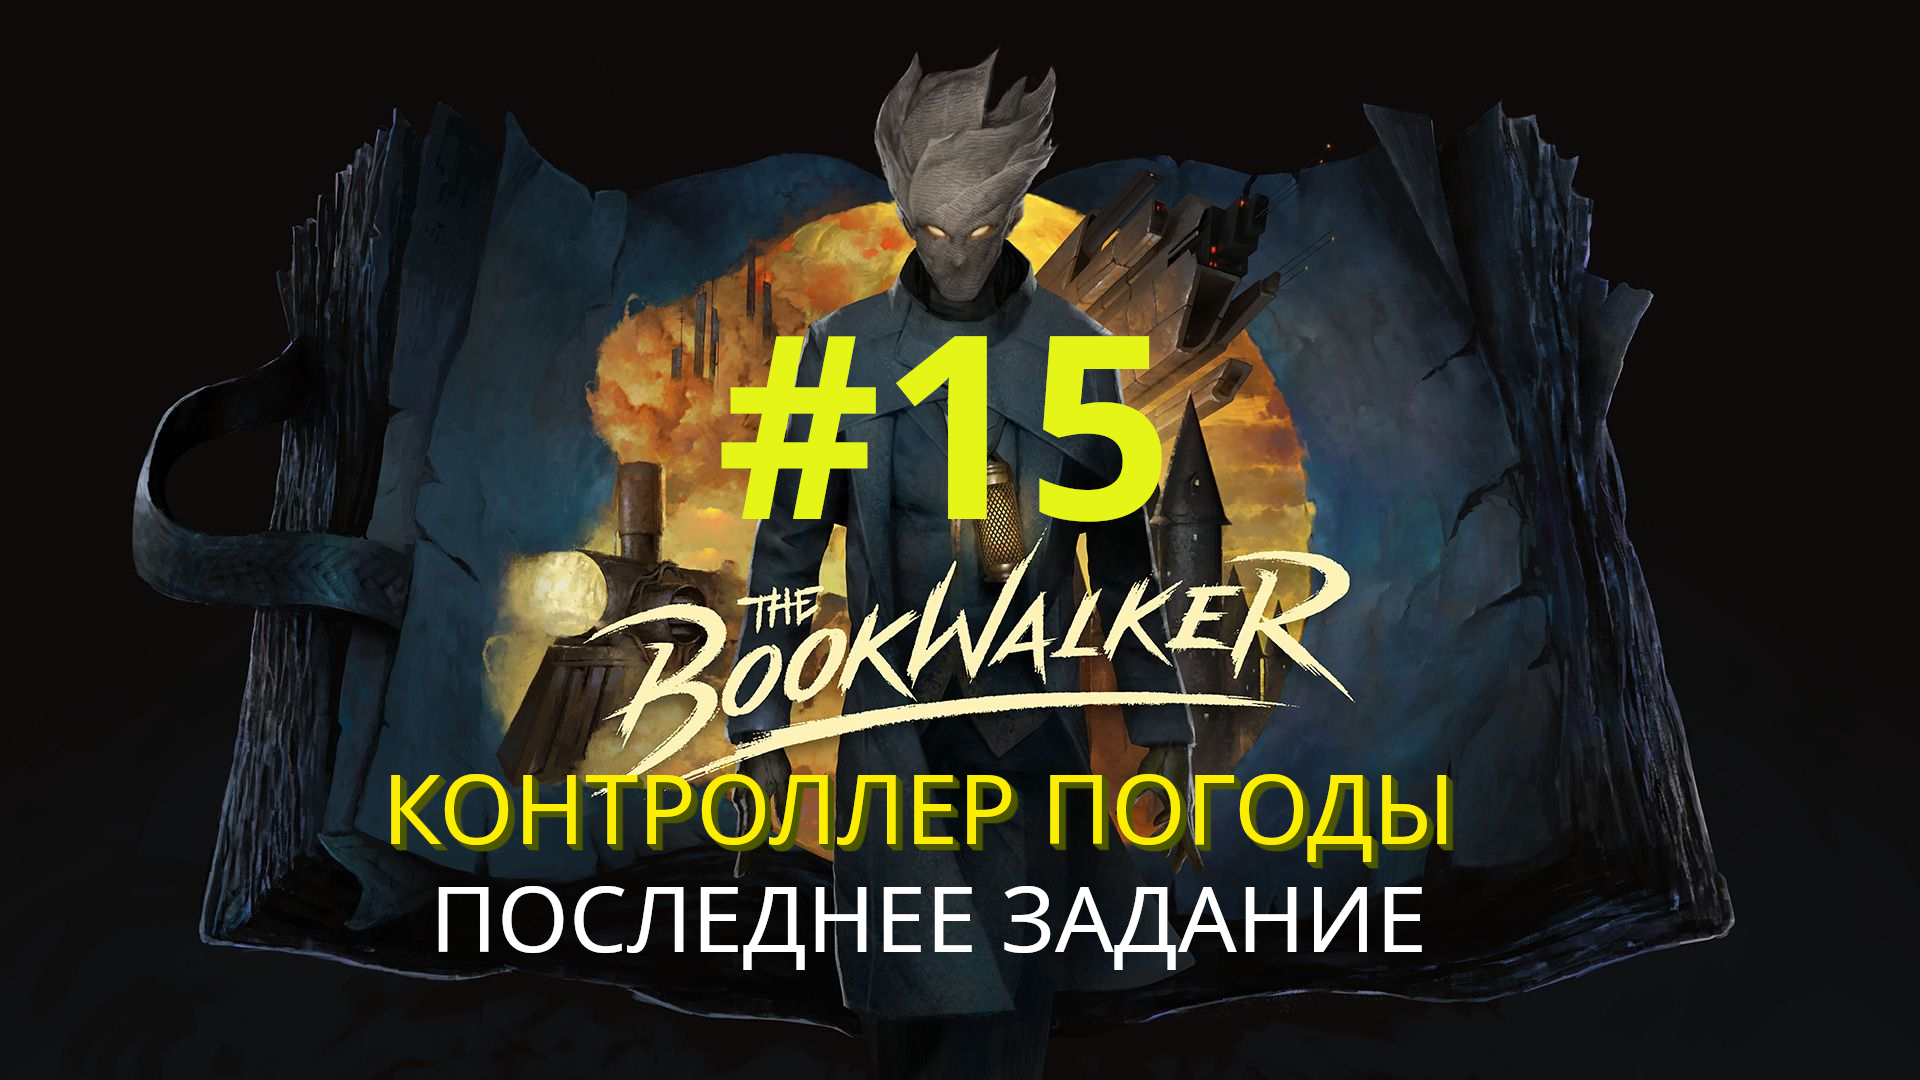 The Bookwalker: Thief of Tales | Последнее задание (Контроллер погоды) | Прохождение #15